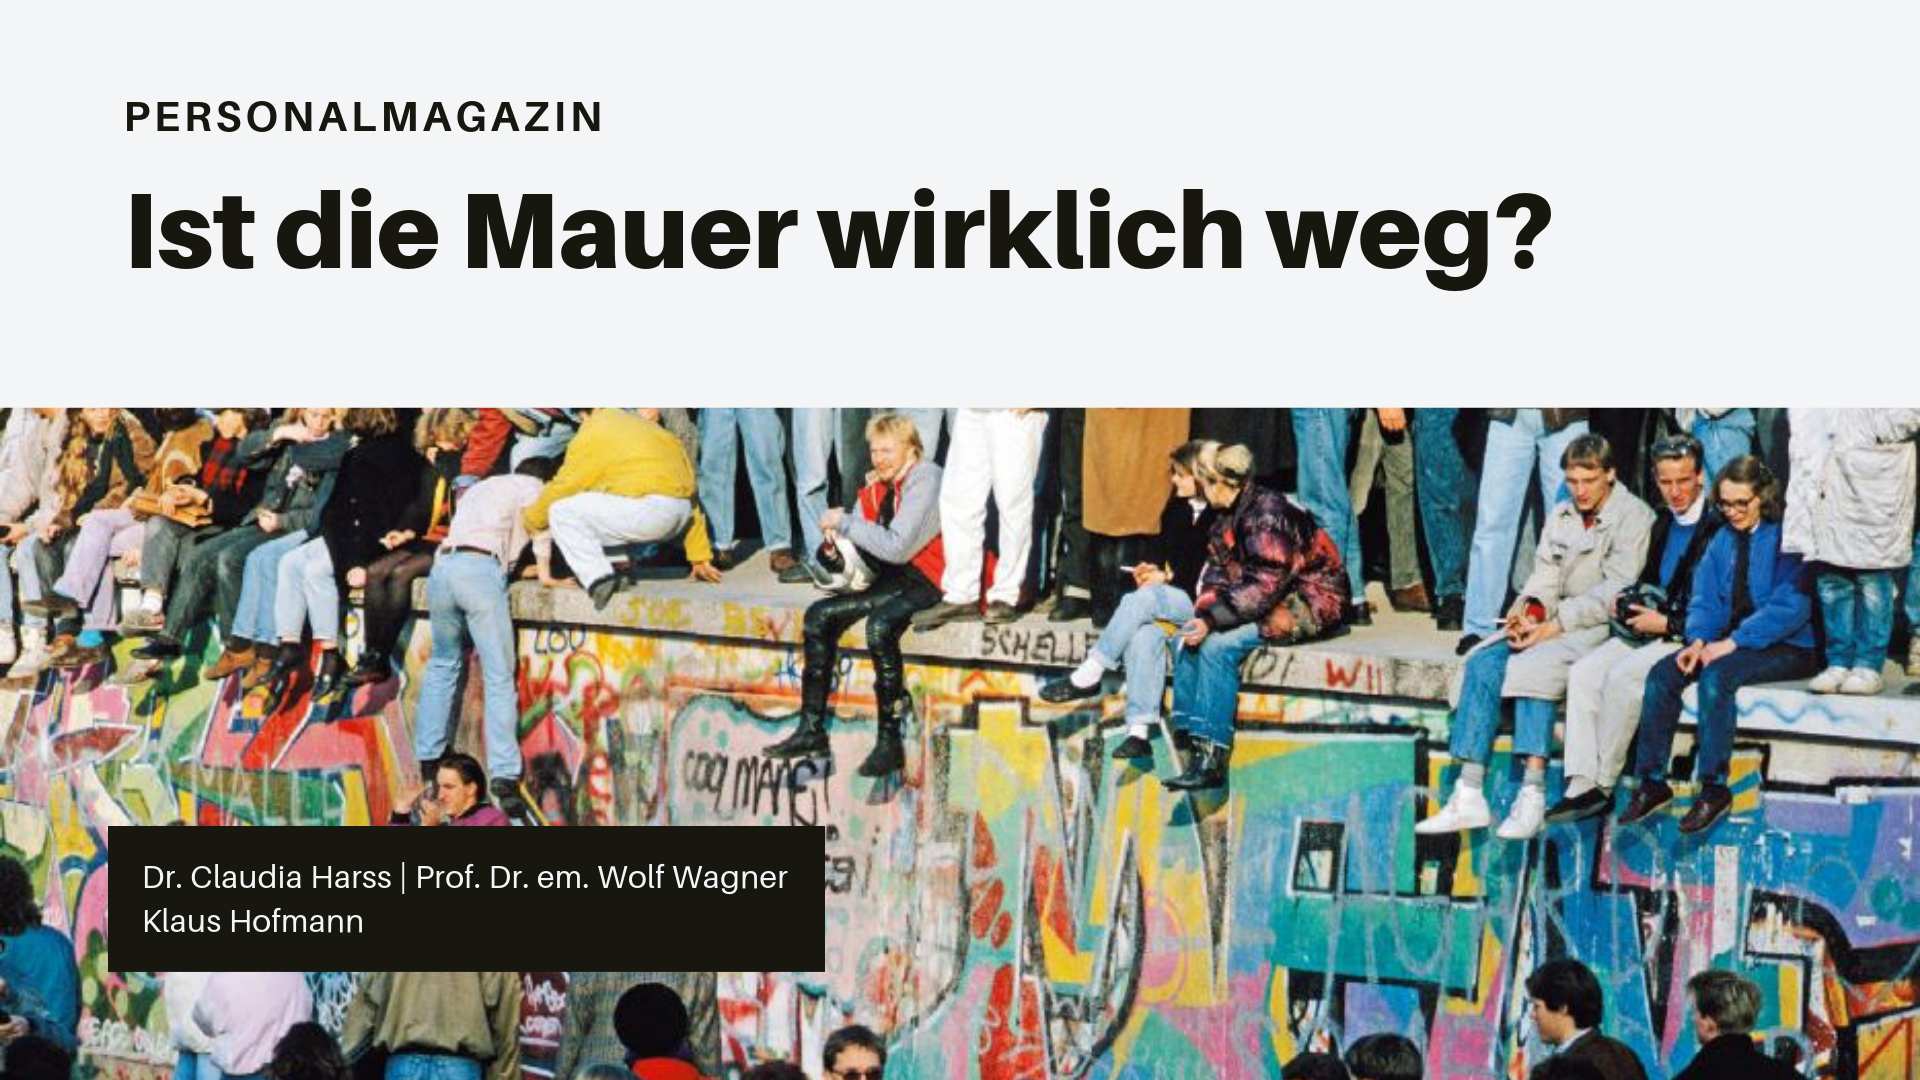 Ist die Mauer wirklich weg? By Dr. Claudia Harss, Prof. Dr. em. Wolf Wagner and Klaus Hofmann